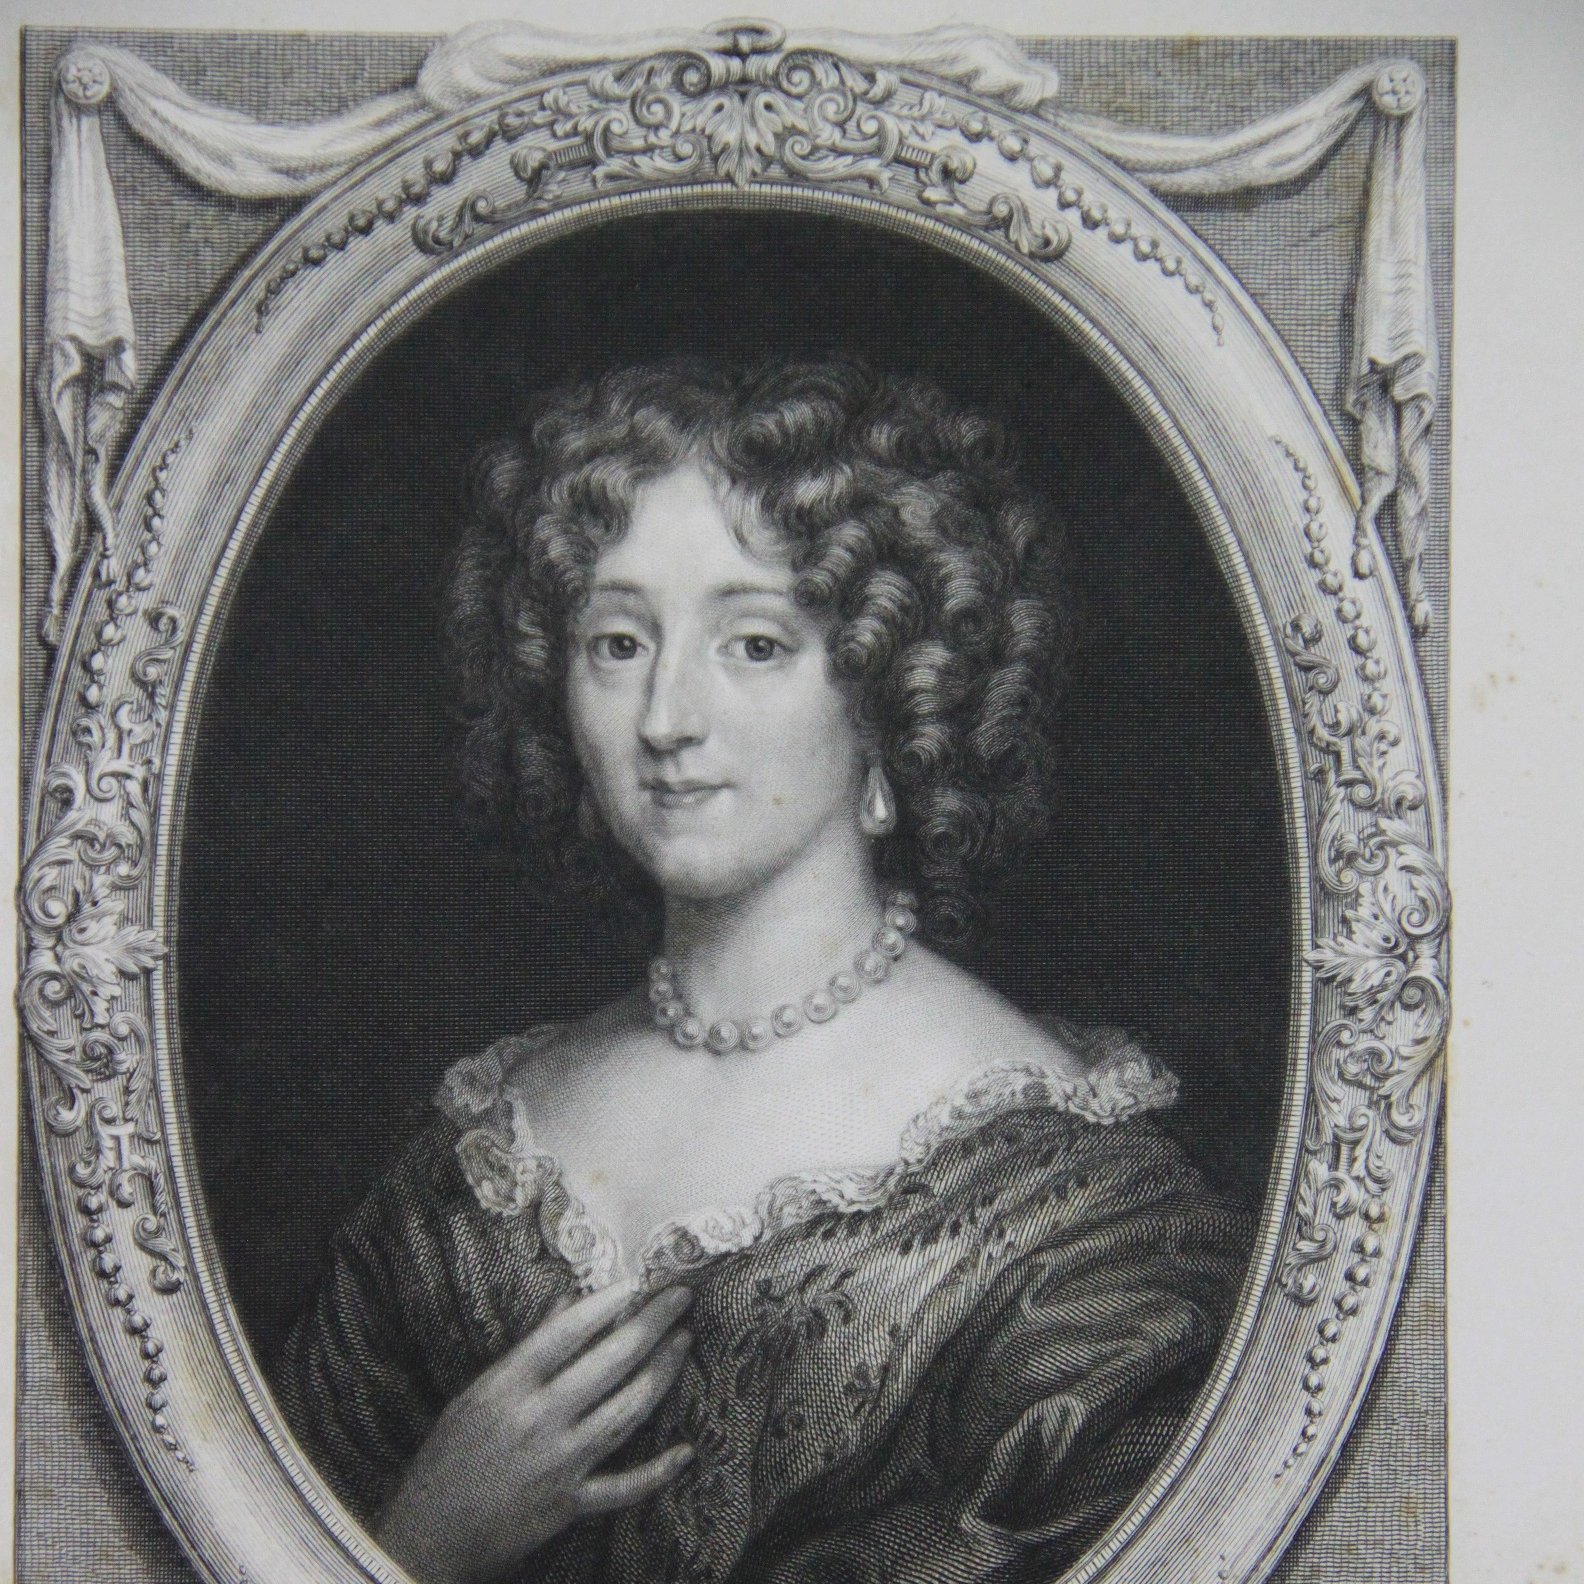 Madame de La Fontaine <br>David-Joseph Desvachez, XIXe siècle, gravure<br><small>© Ville de Château-Thierry - Musée Jean de La Fontaine</small>